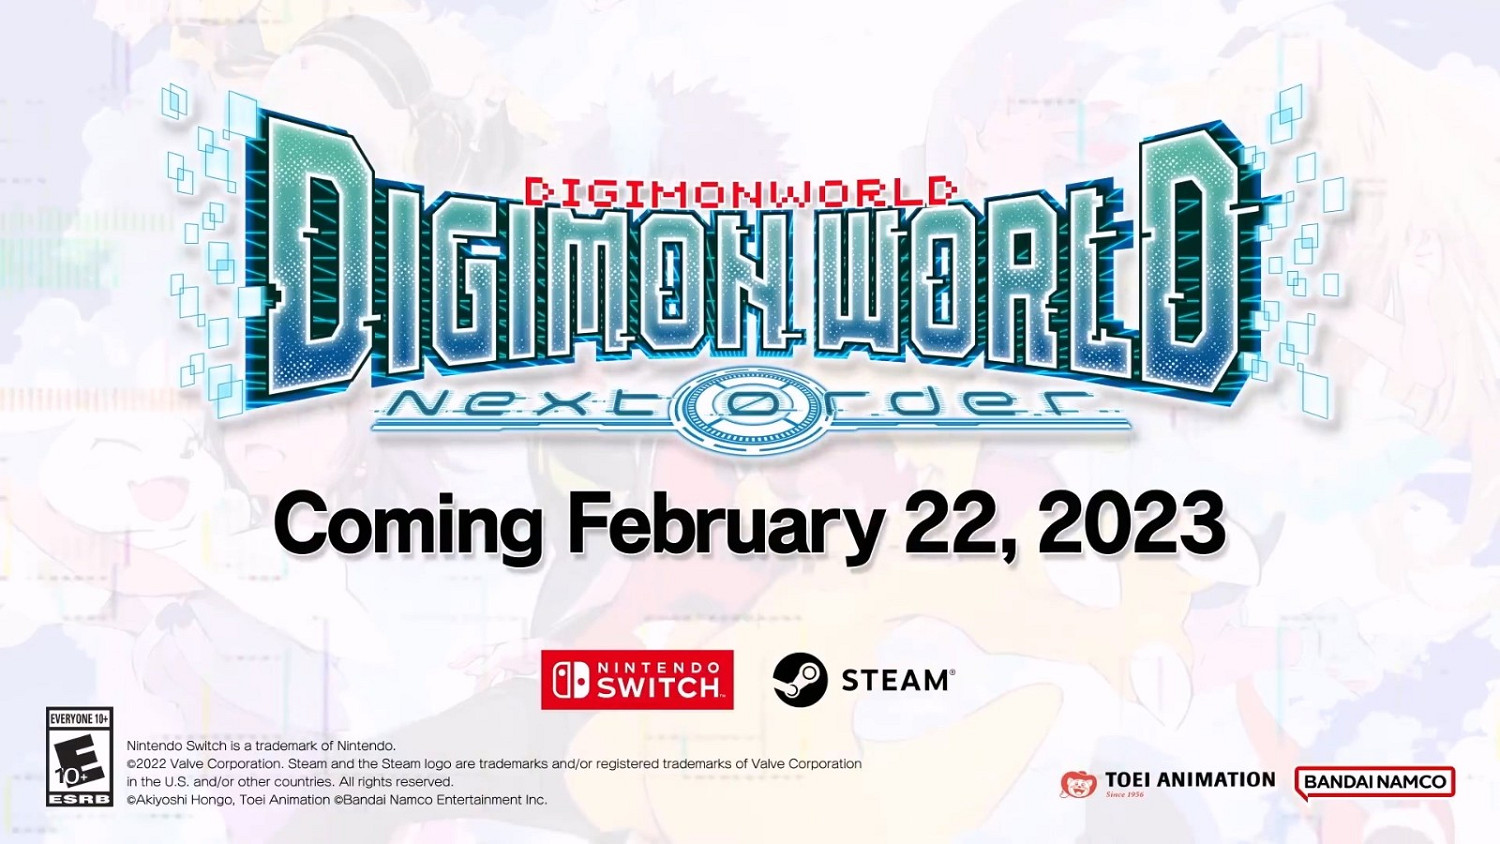 《数码宝贝世界 -Next 0rder-》全新预告发布 明年将登陆PC和Switch平台